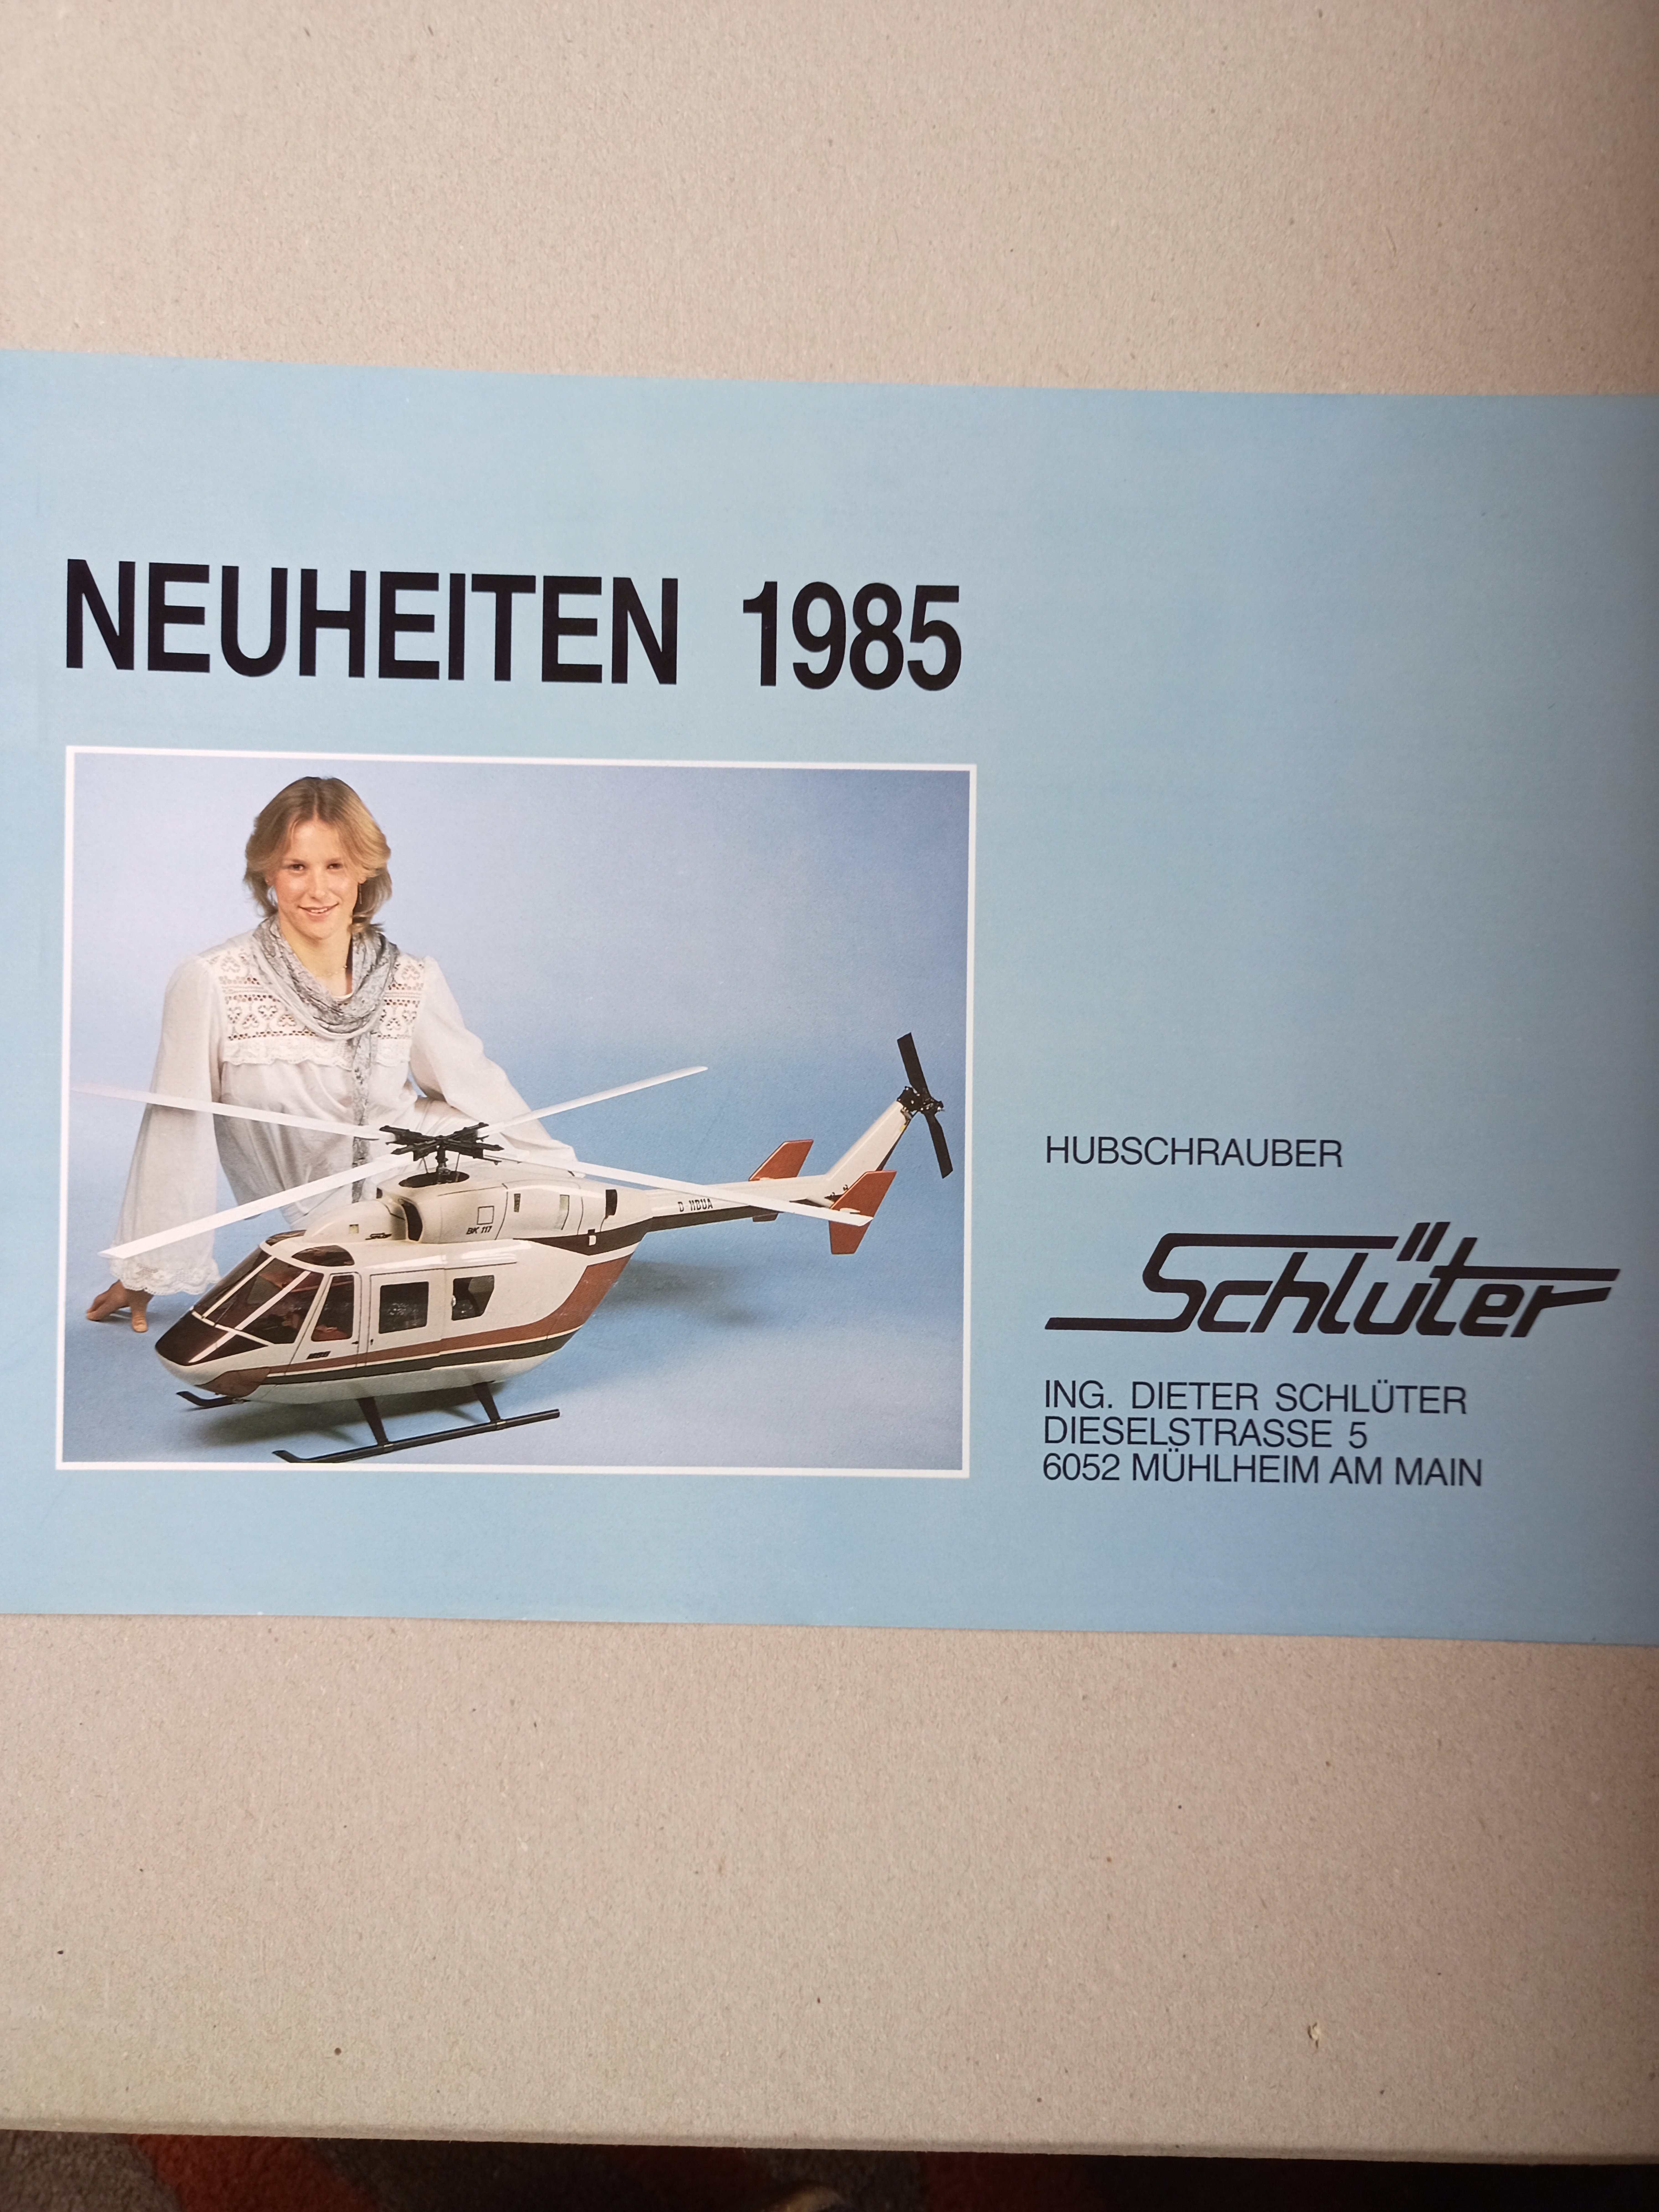 Neuheiten Schlüter 1985 (Deutsches Segelflugmuseum mit Modellflug CC BY-NC-SA)